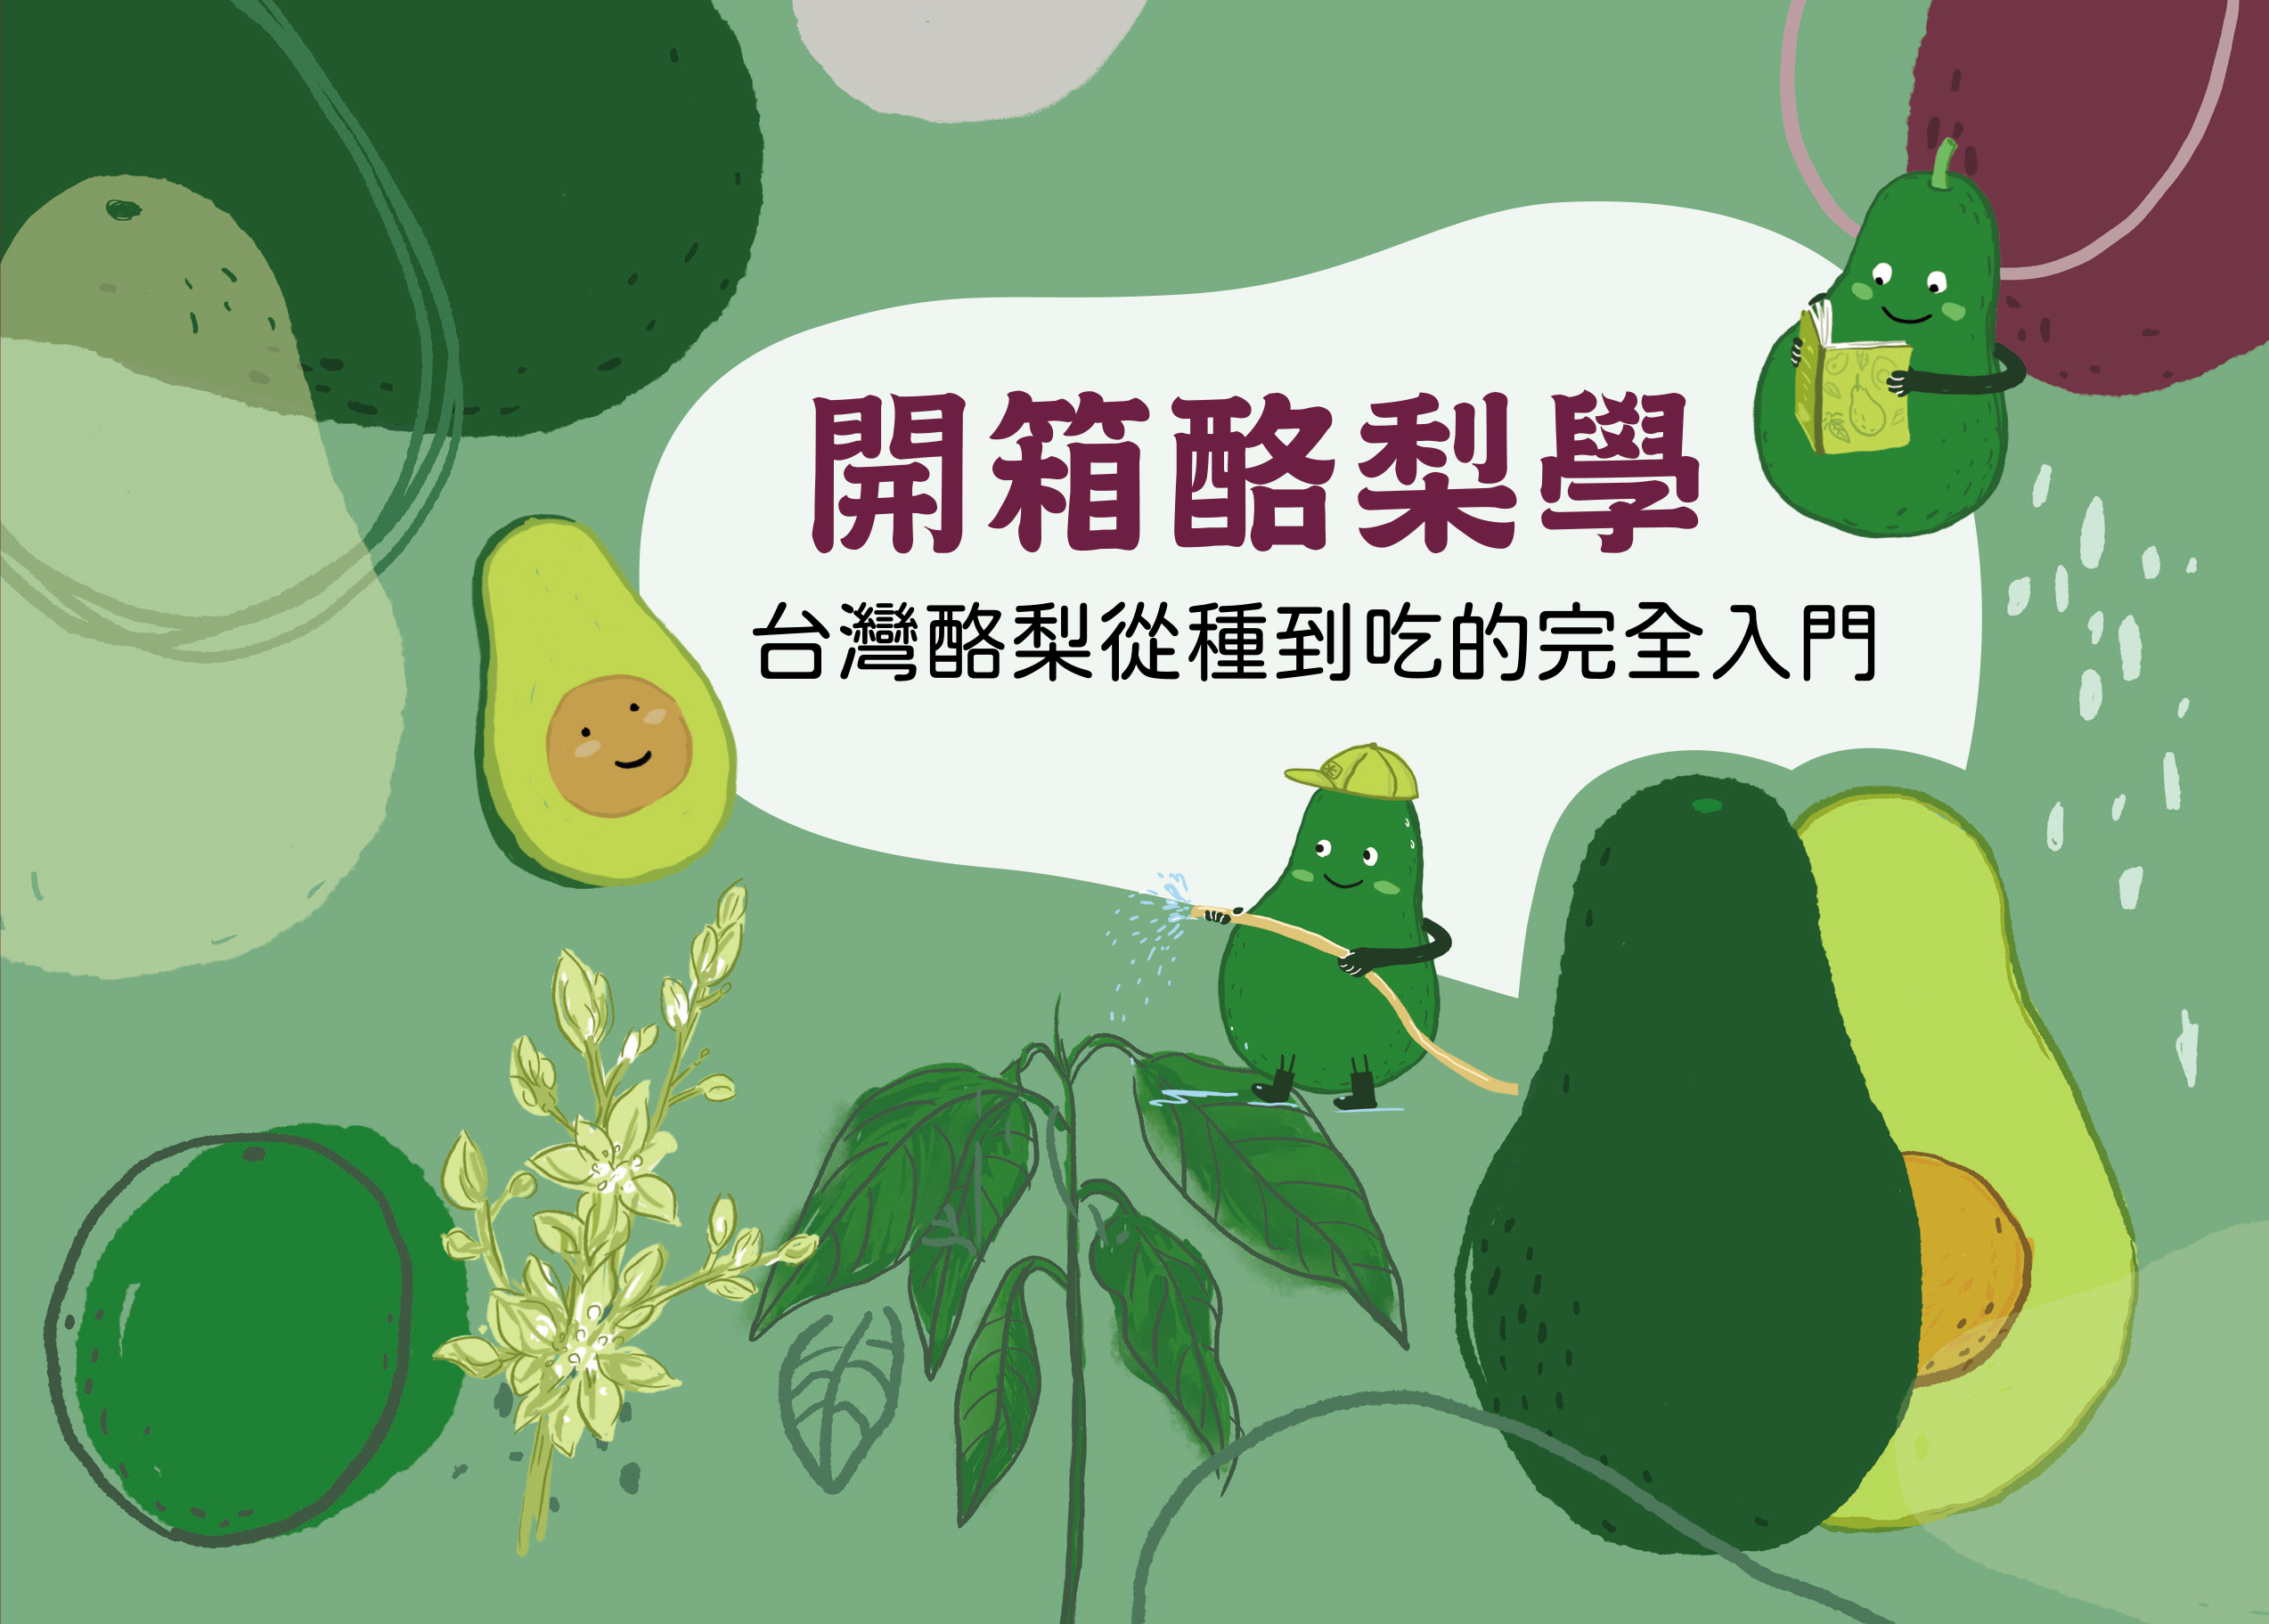 開箱酪梨學-台灣酪梨從種到吃的完全入門